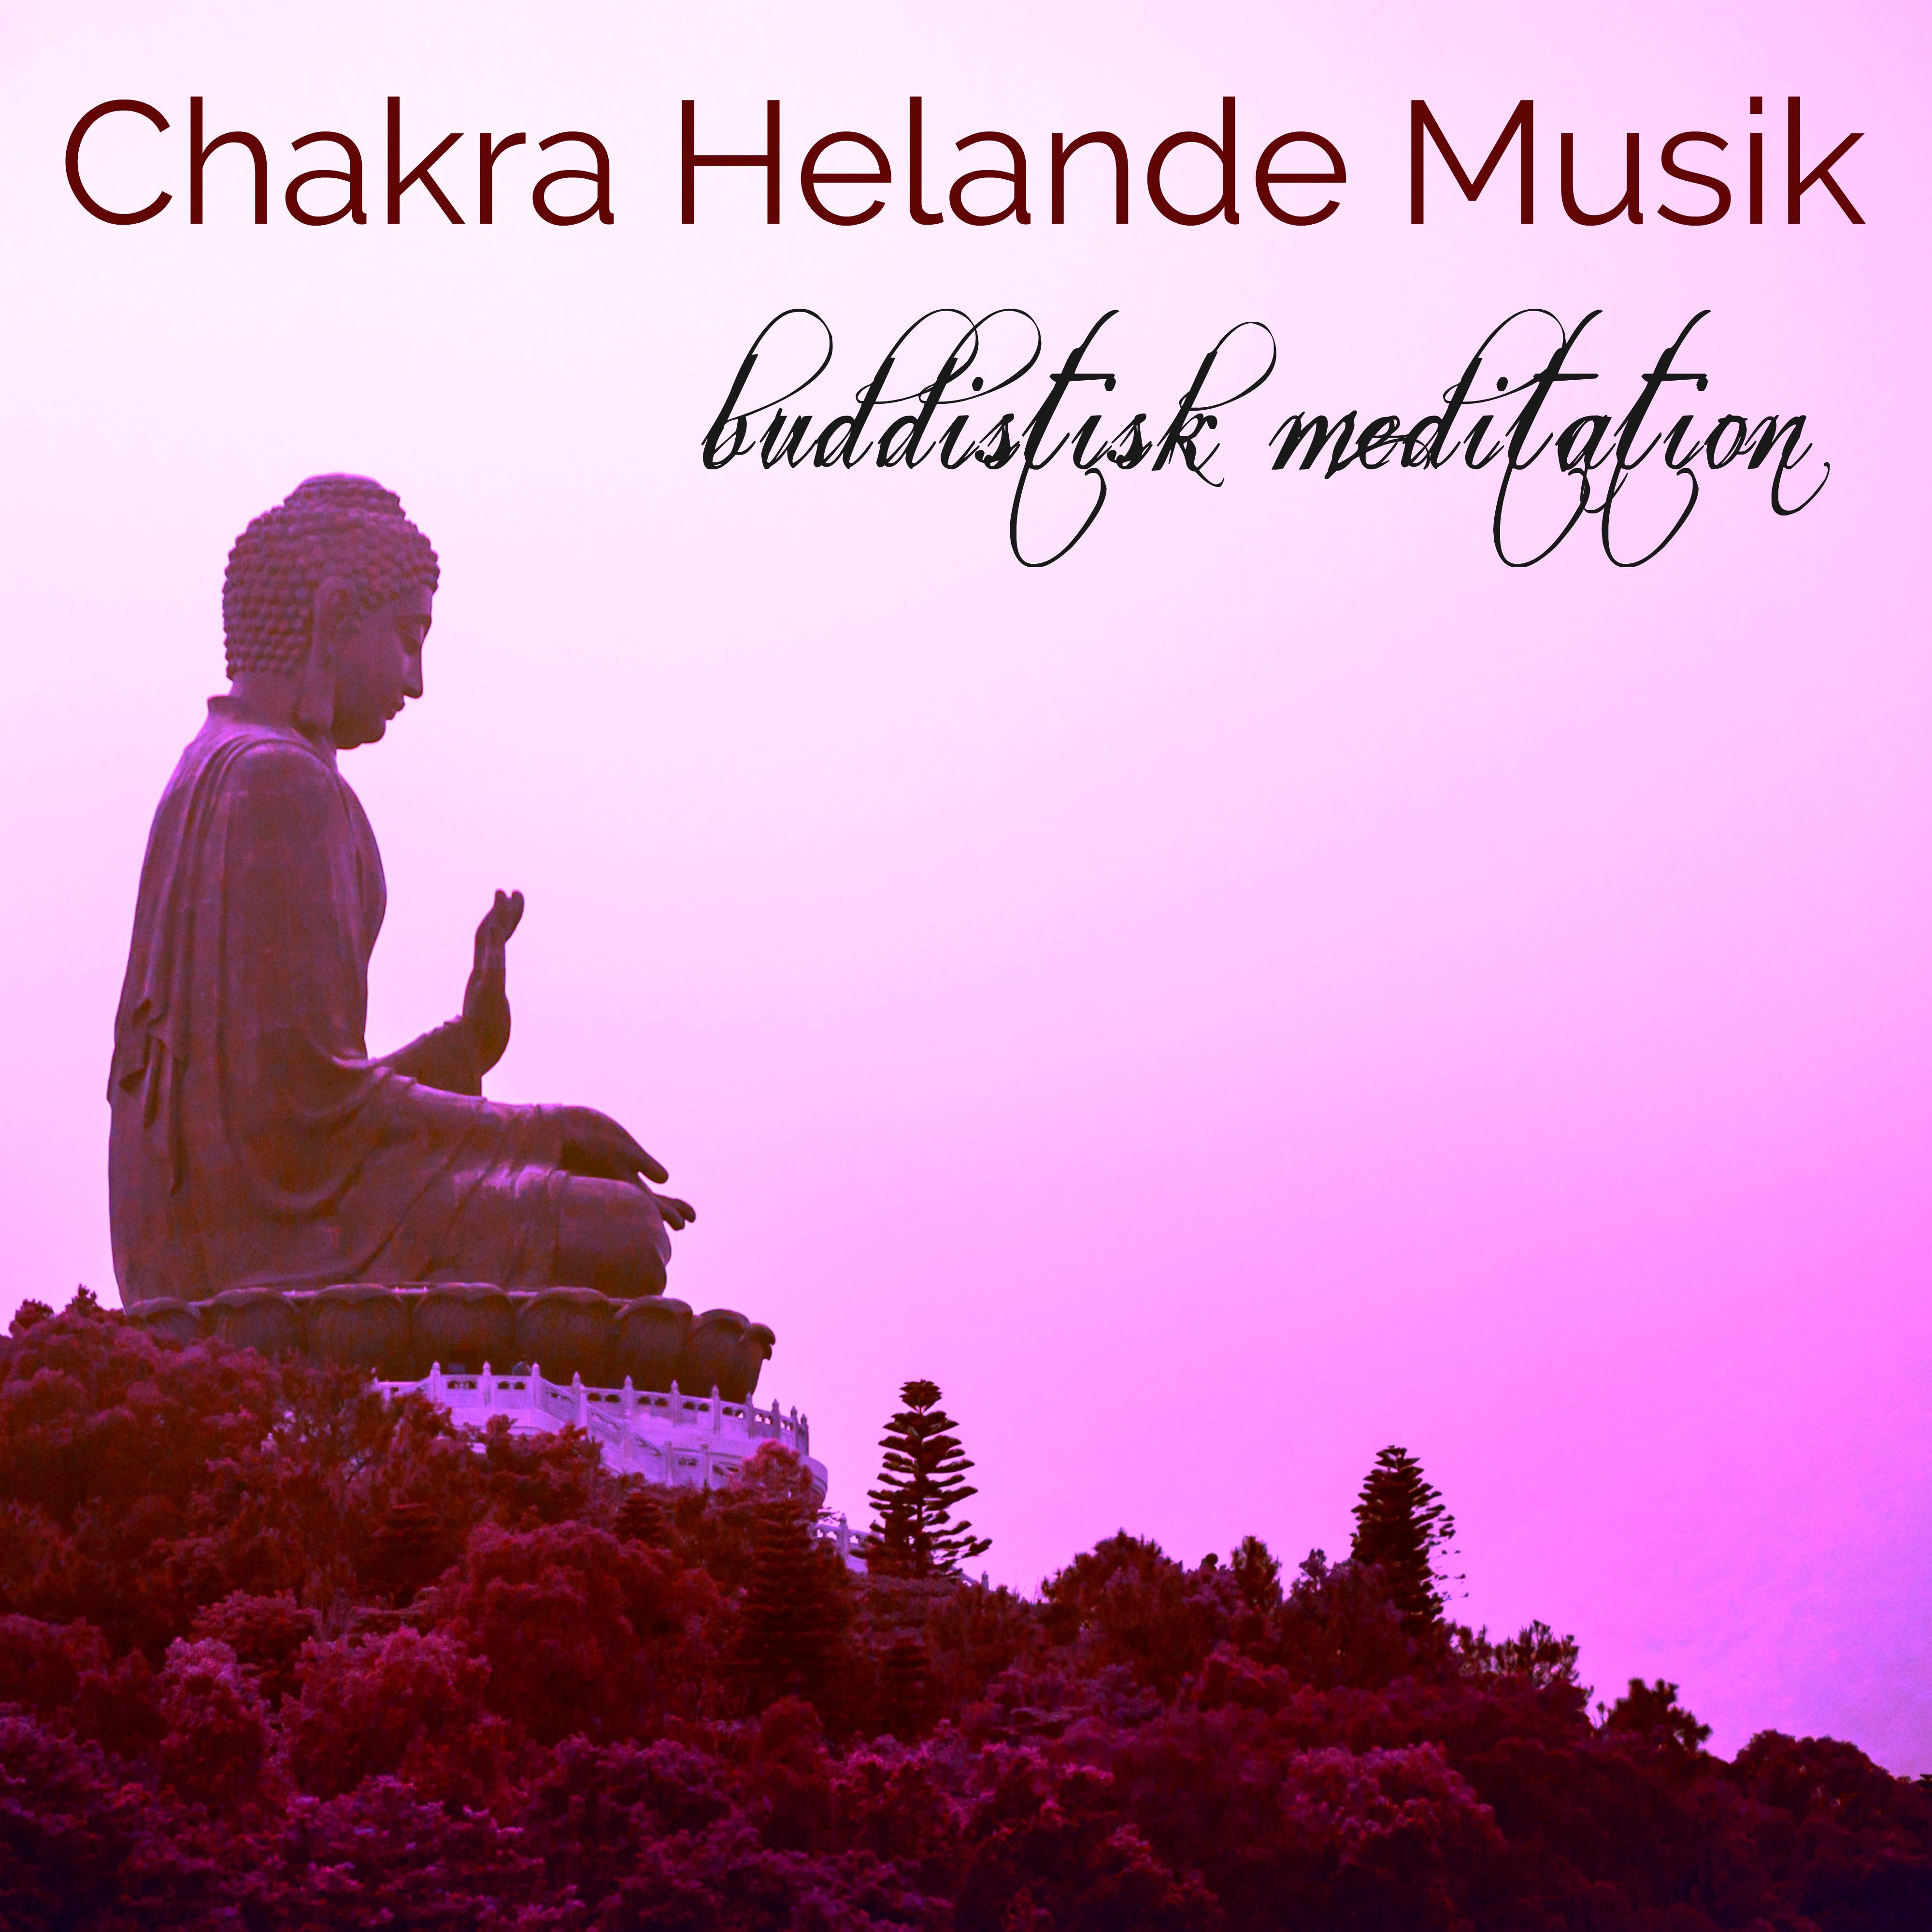 Chakra Helande Musik Buddistisk Meditation - Avslappnande Musik för Chakra Meditation, Mindfulnessträning och Kärleksfull Vänlighet Meditation, Kundalini Yoga och Chakra Balancing